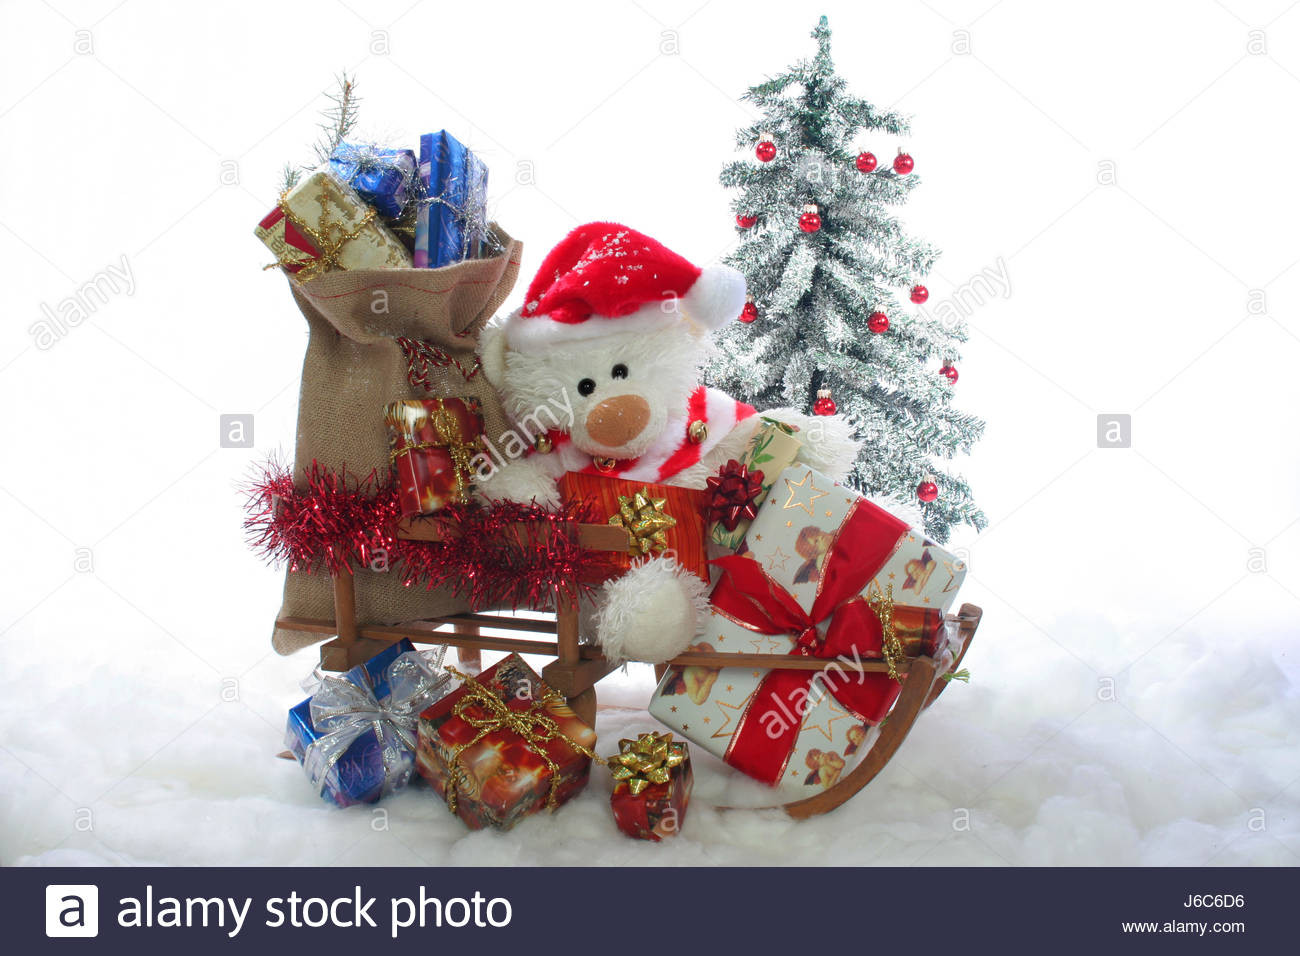 Geschenke Weihnachten
 weihnachtsmann weihnachten weihnachtsbaum geschenke schnee